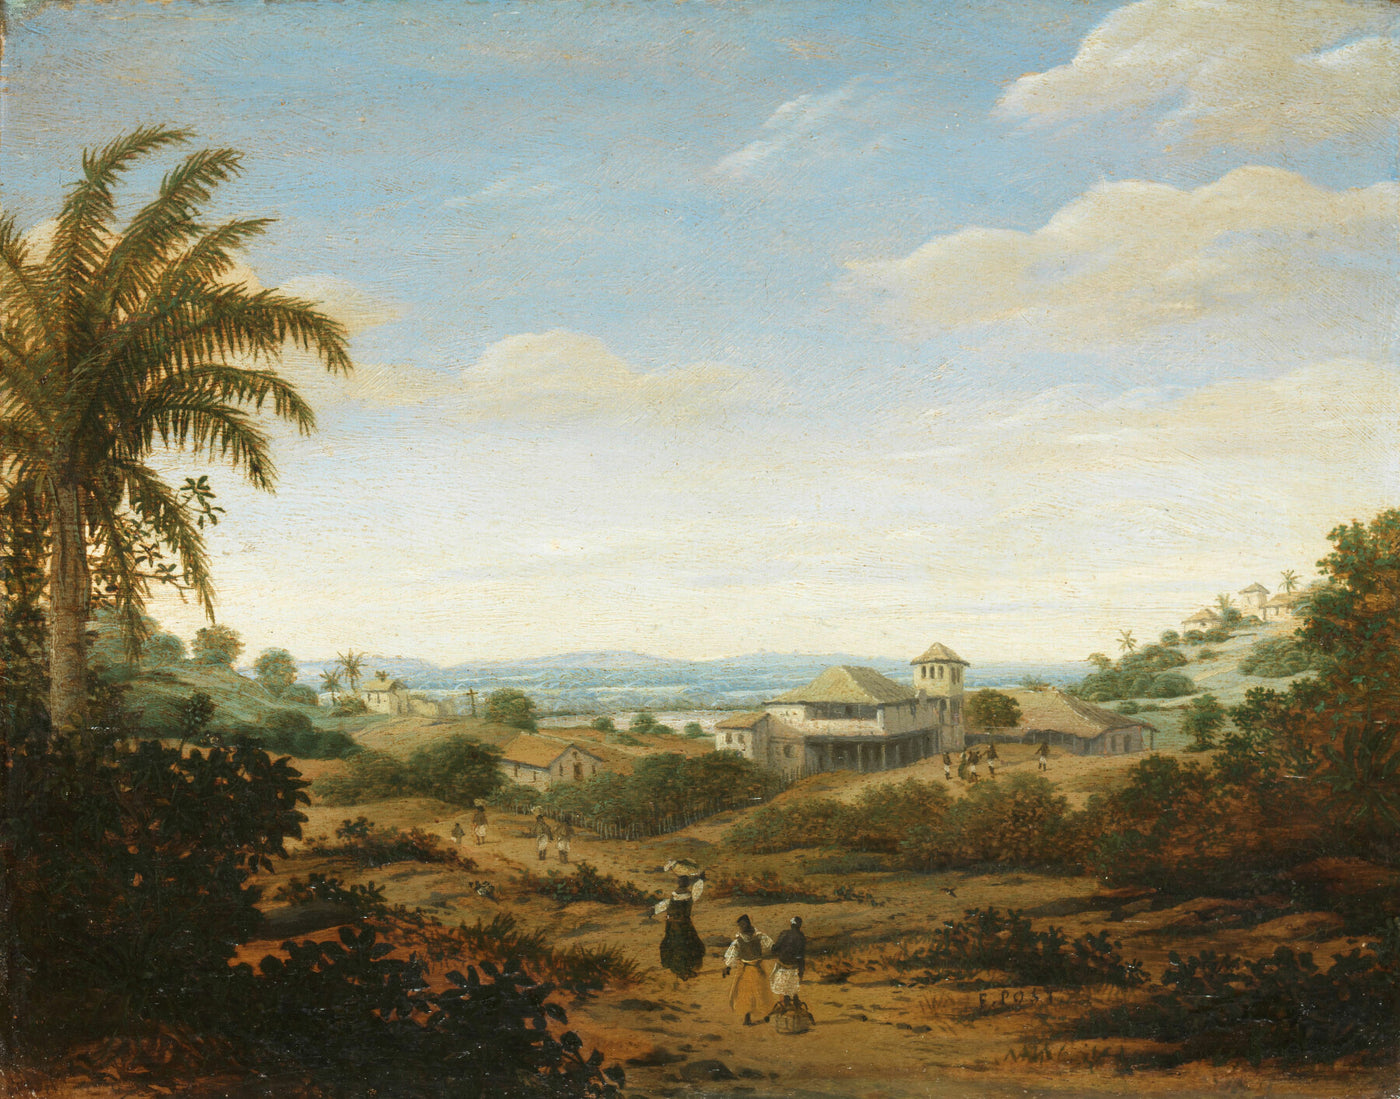 Landschaft am Fluss Senhor de Engenho, Brasilien, Frans Jansz. Post, 1670 - 1680